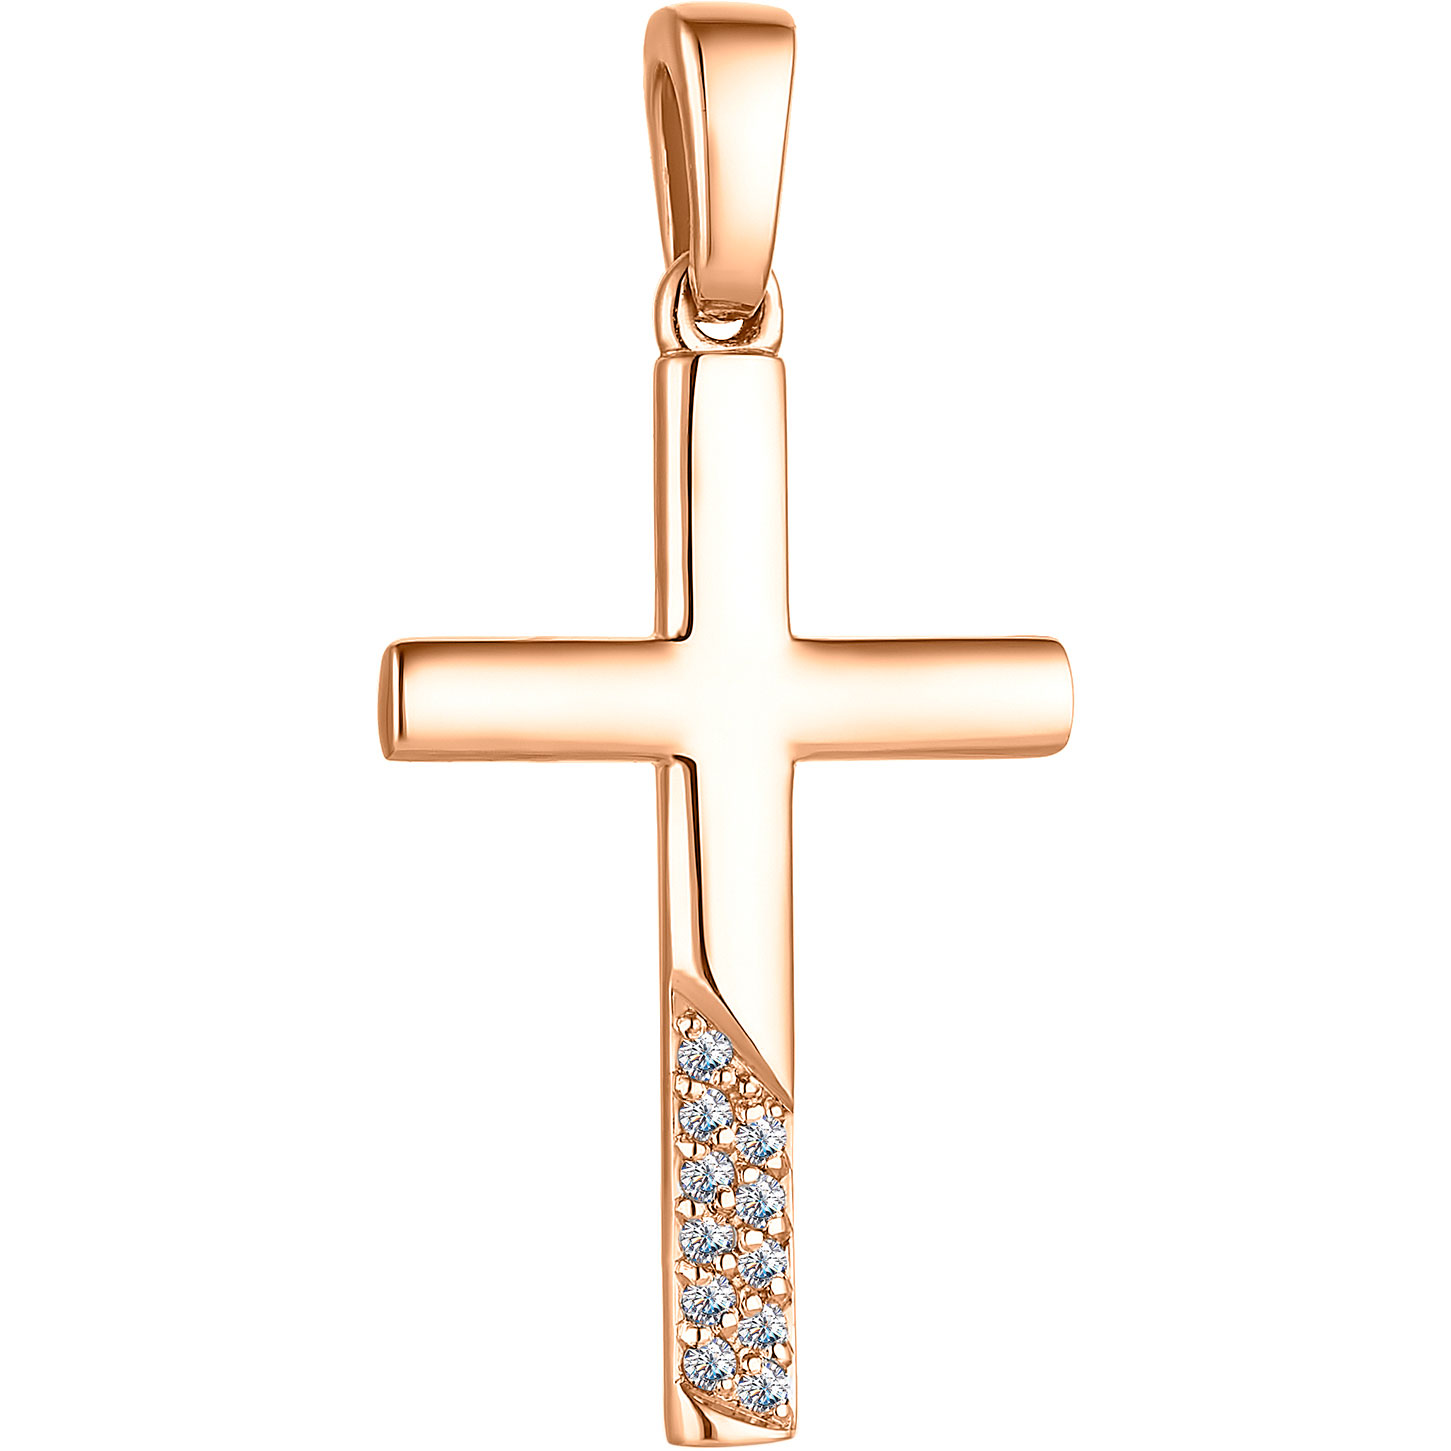 Женский золотой декоративный крестик Алькор 33301-100 с бриллиантами